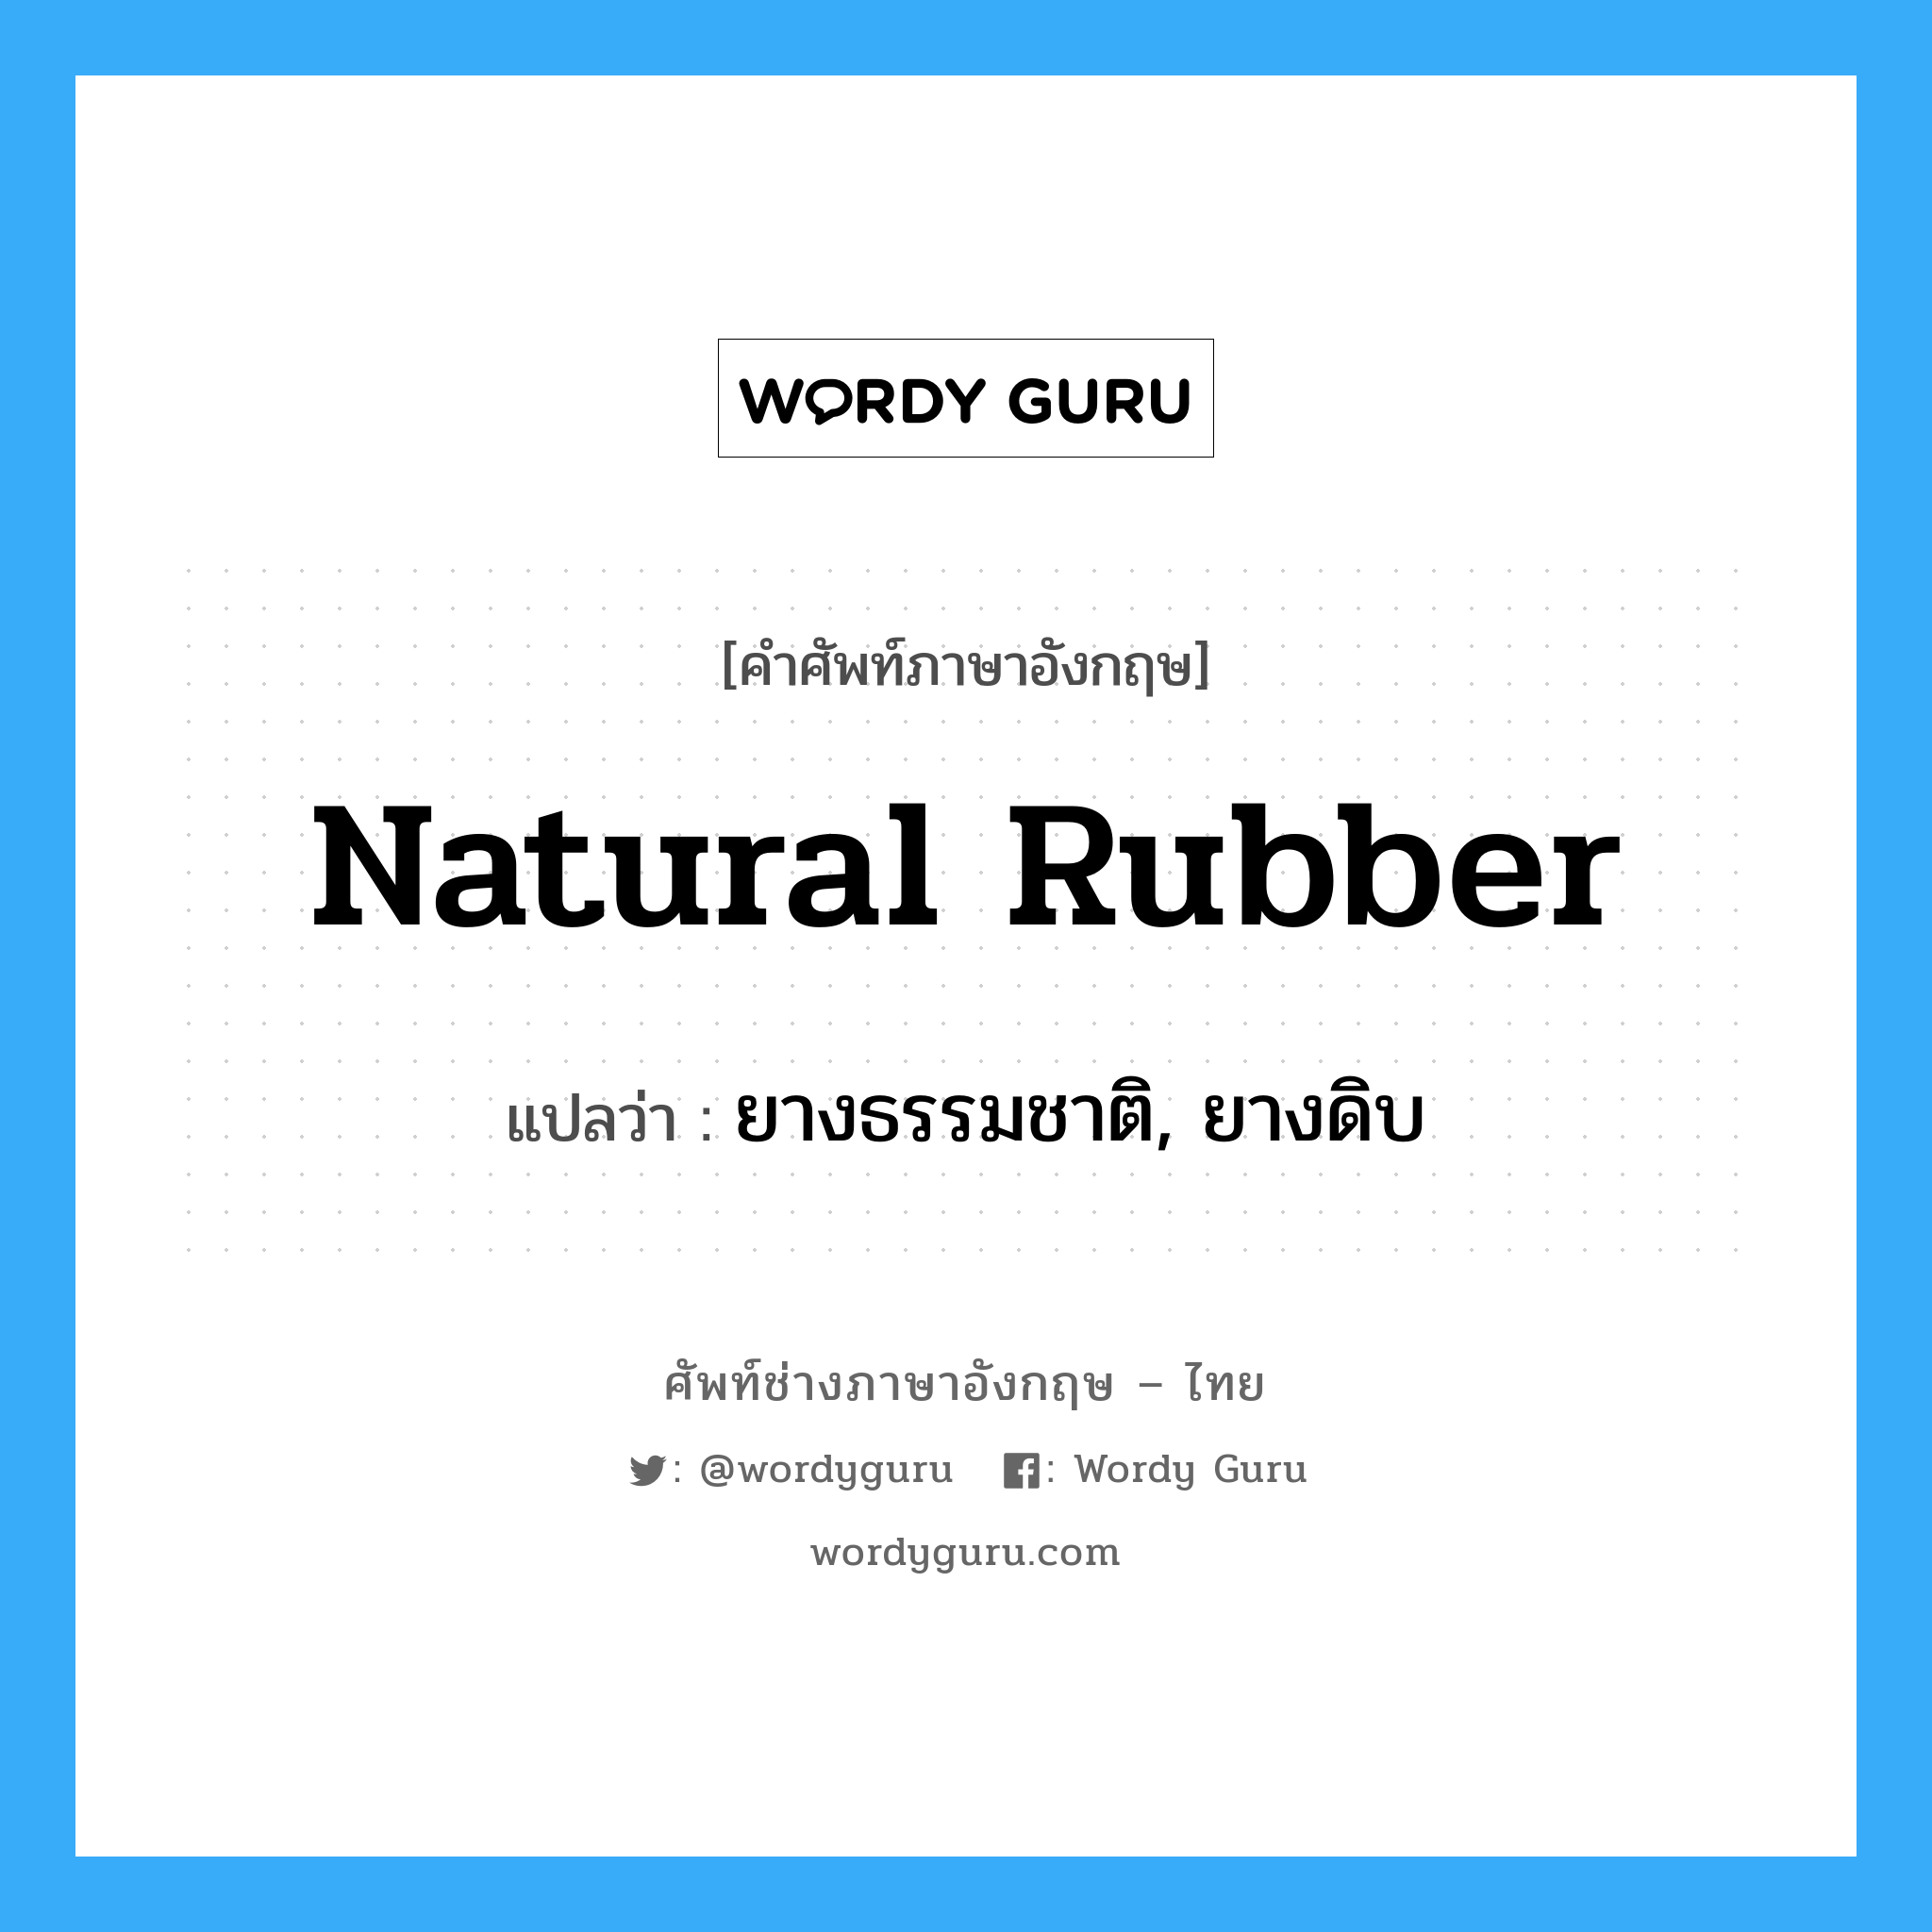 ยางธรรมชาติ, ยางดิบ ภาษาอังกฤษ?, คำศัพท์ช่างภาษาอังกฤษ - ไทย ยางธรรมชาติ, ยางดิบ คำศัพท์ภาษาอังกฤษ ยางธรรมชาติ, ยางดิบ แปลว่า natural rubber